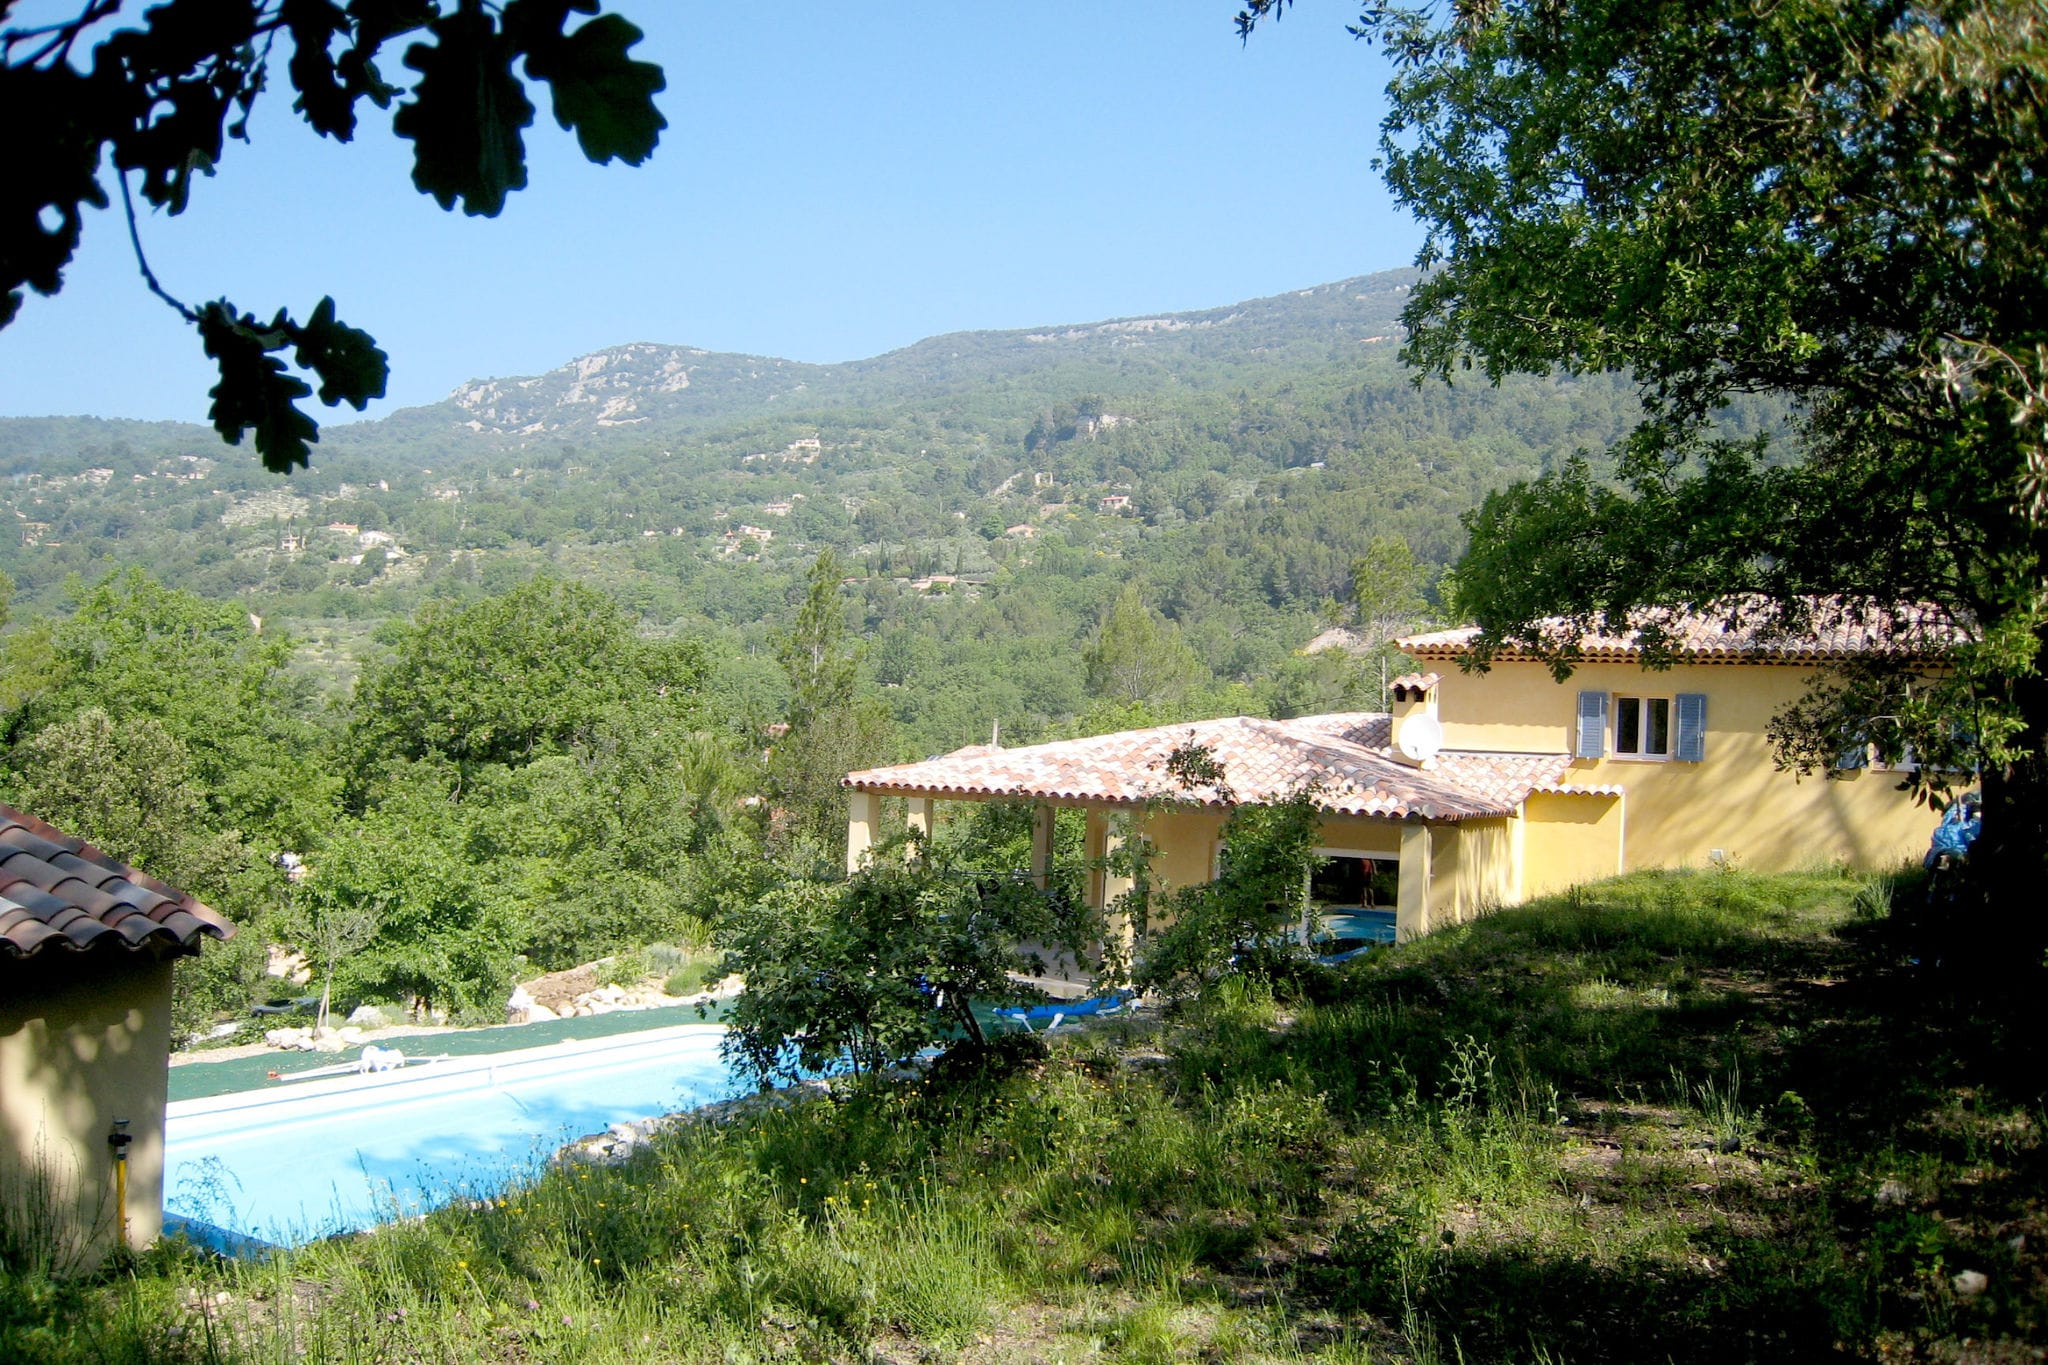 Villa d'élite avec piscine à Bargemon, Provence